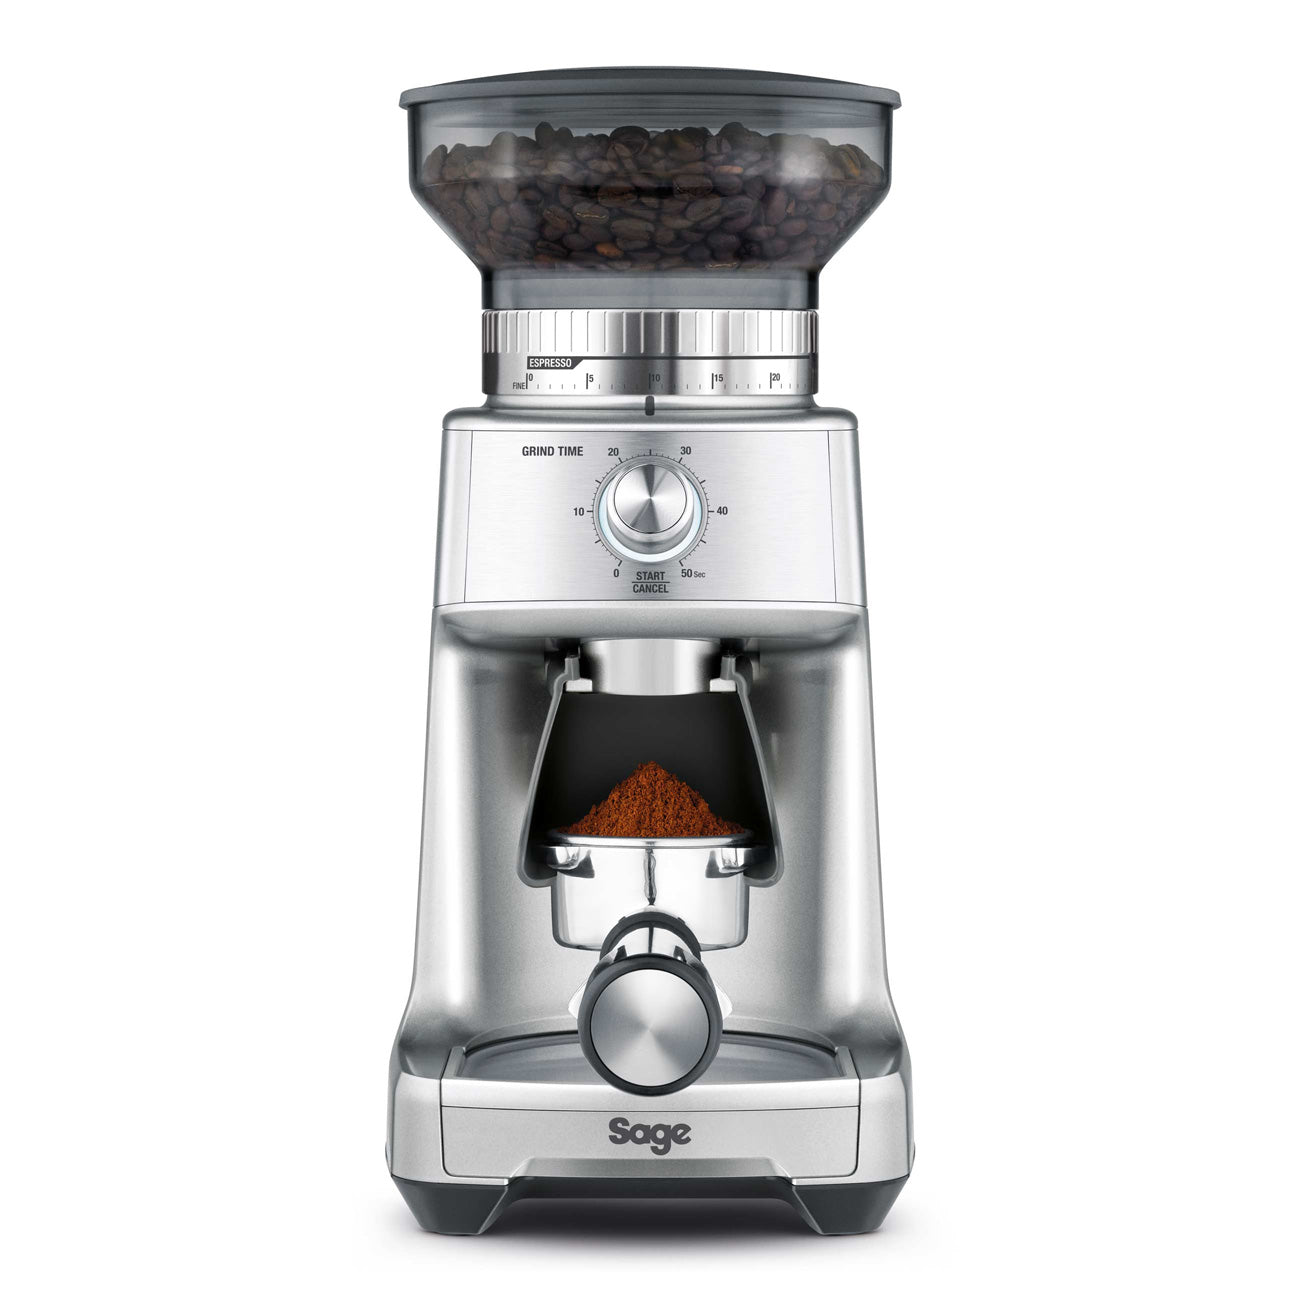 Sage coffee grinder 